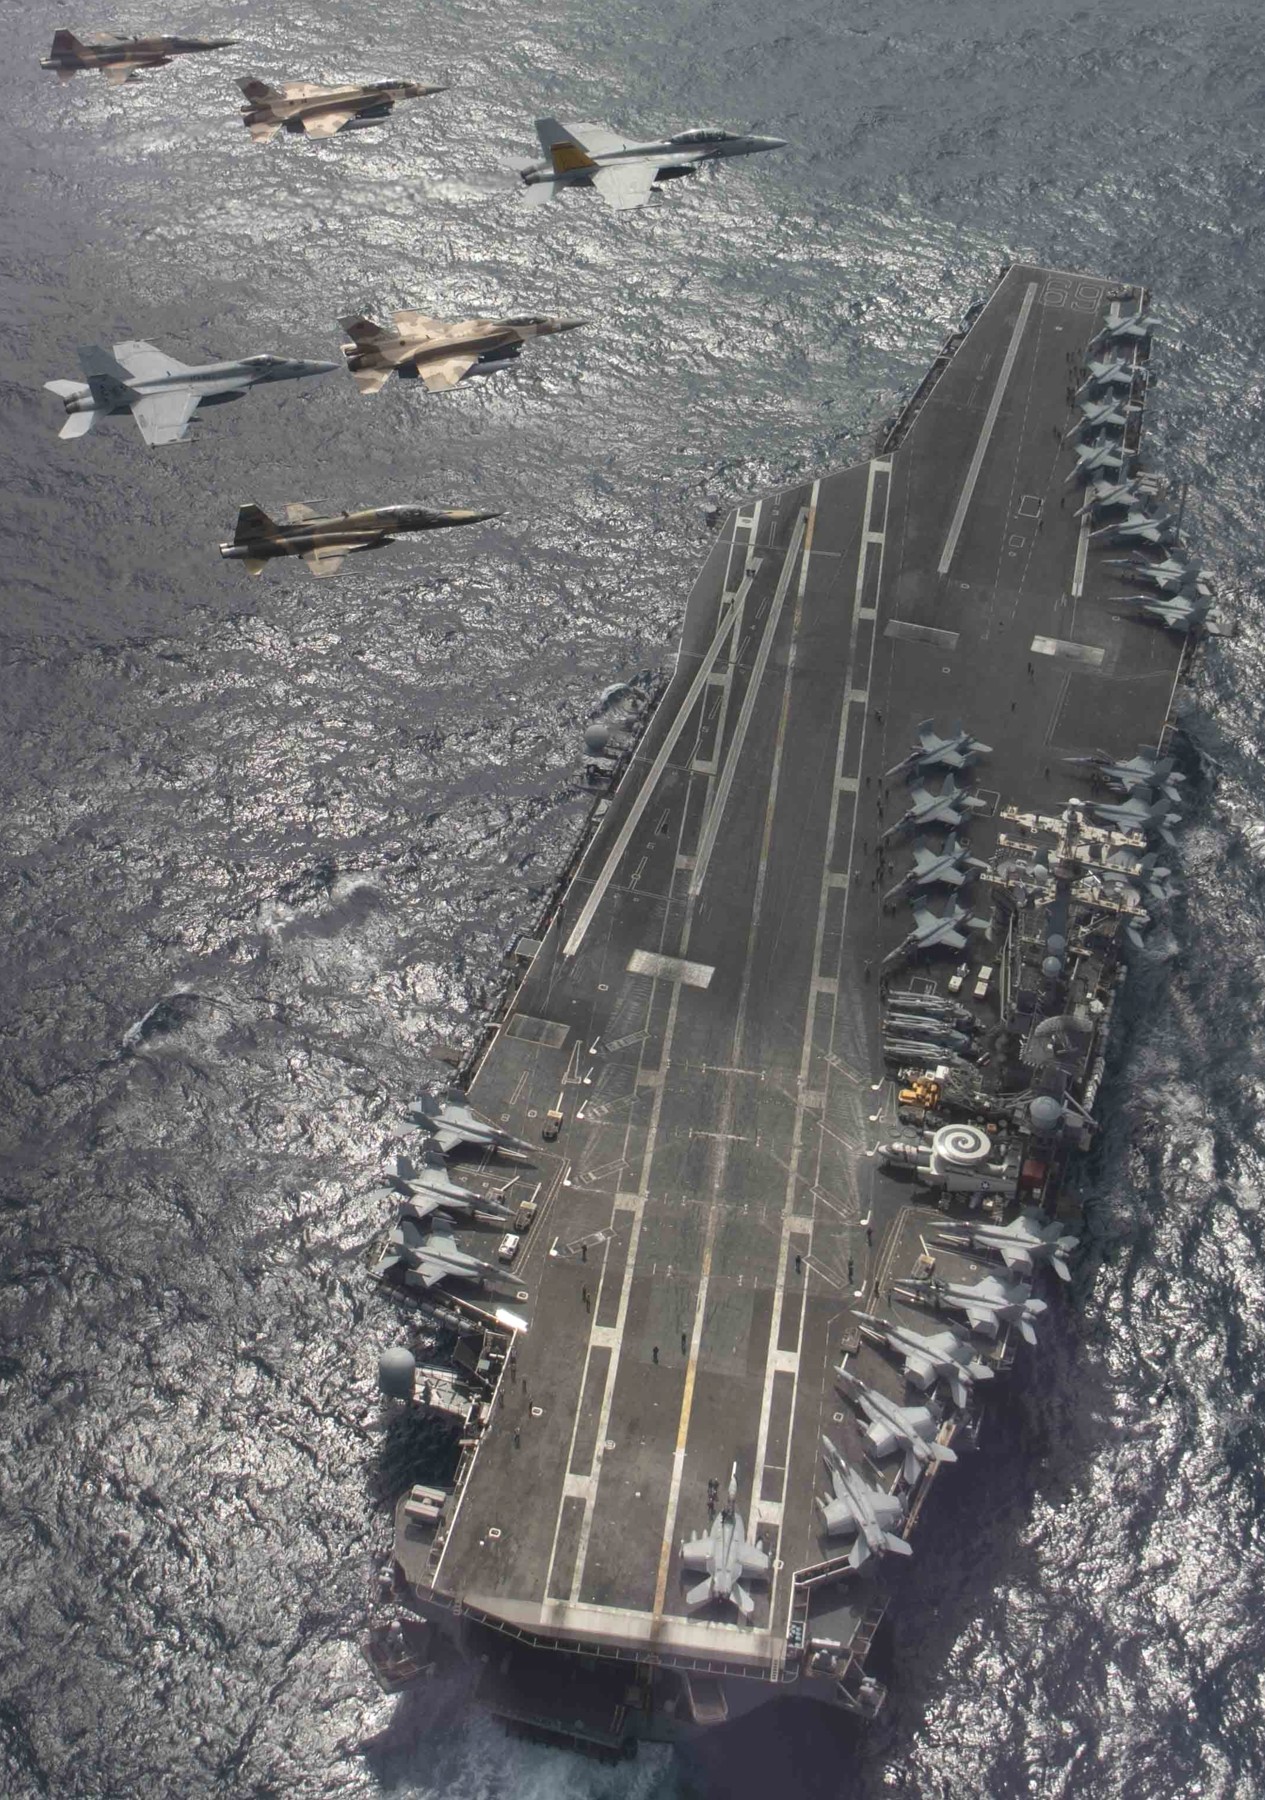 cvn-69 uss dwight d. eisenhower aircraft carrier air wing cvw-3 us navy atlantic ocean 480